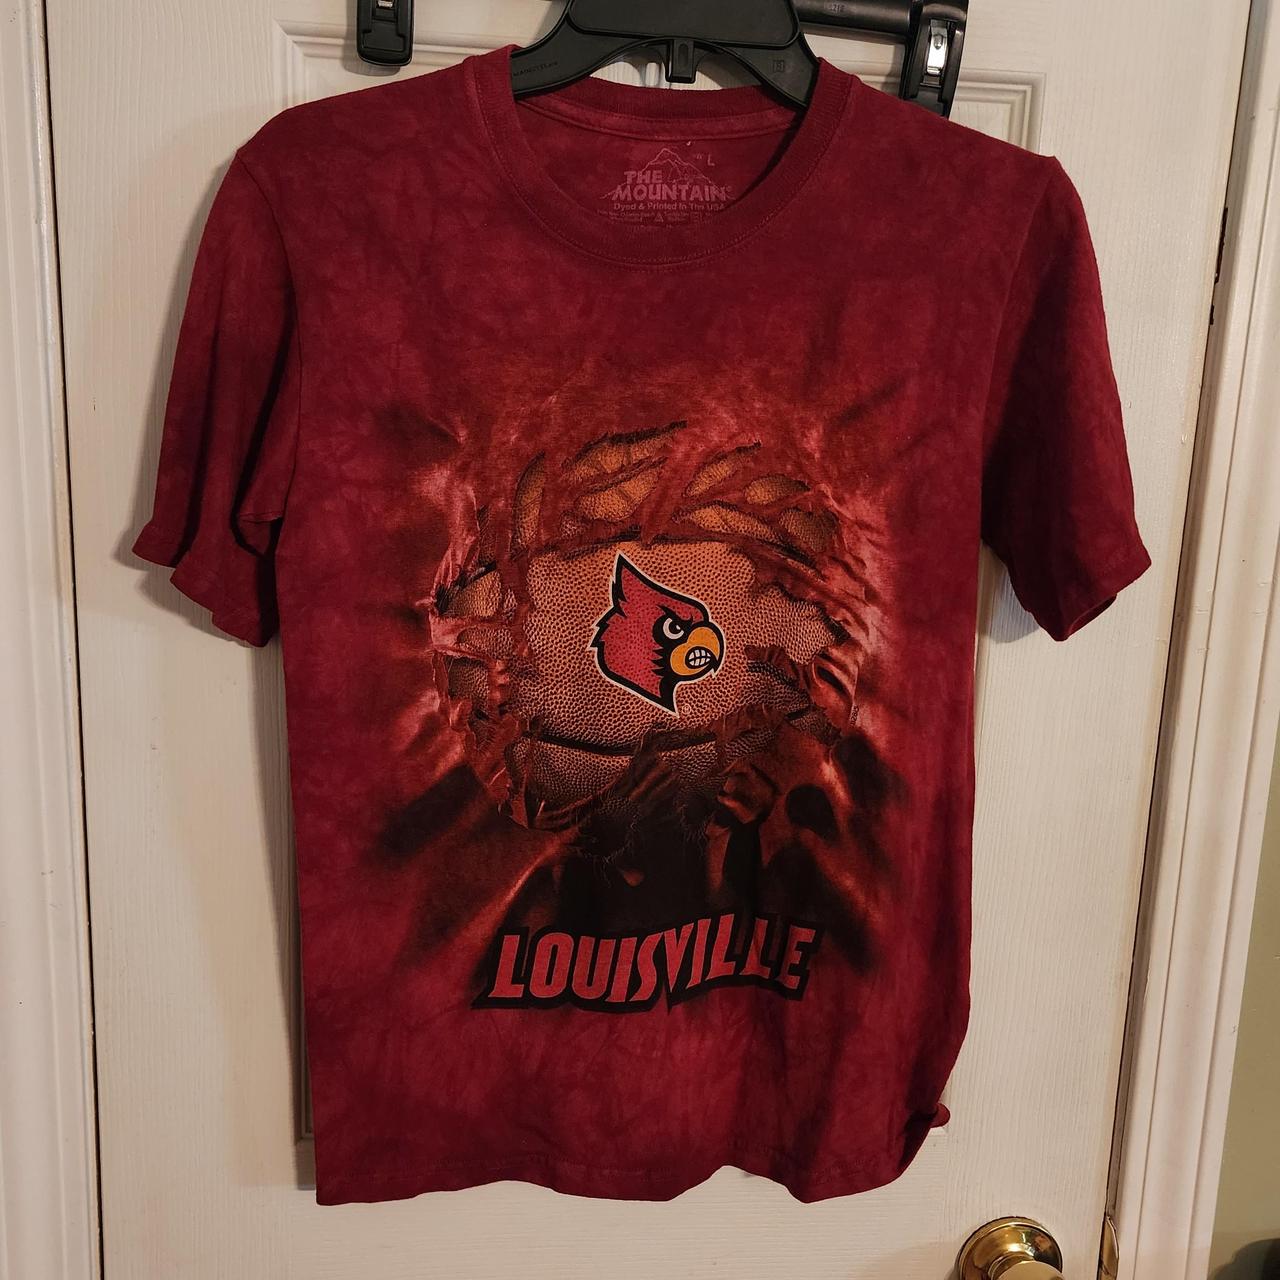 Louisville Kids T-Shirts, Louisville Cardinals Shirts & Tees